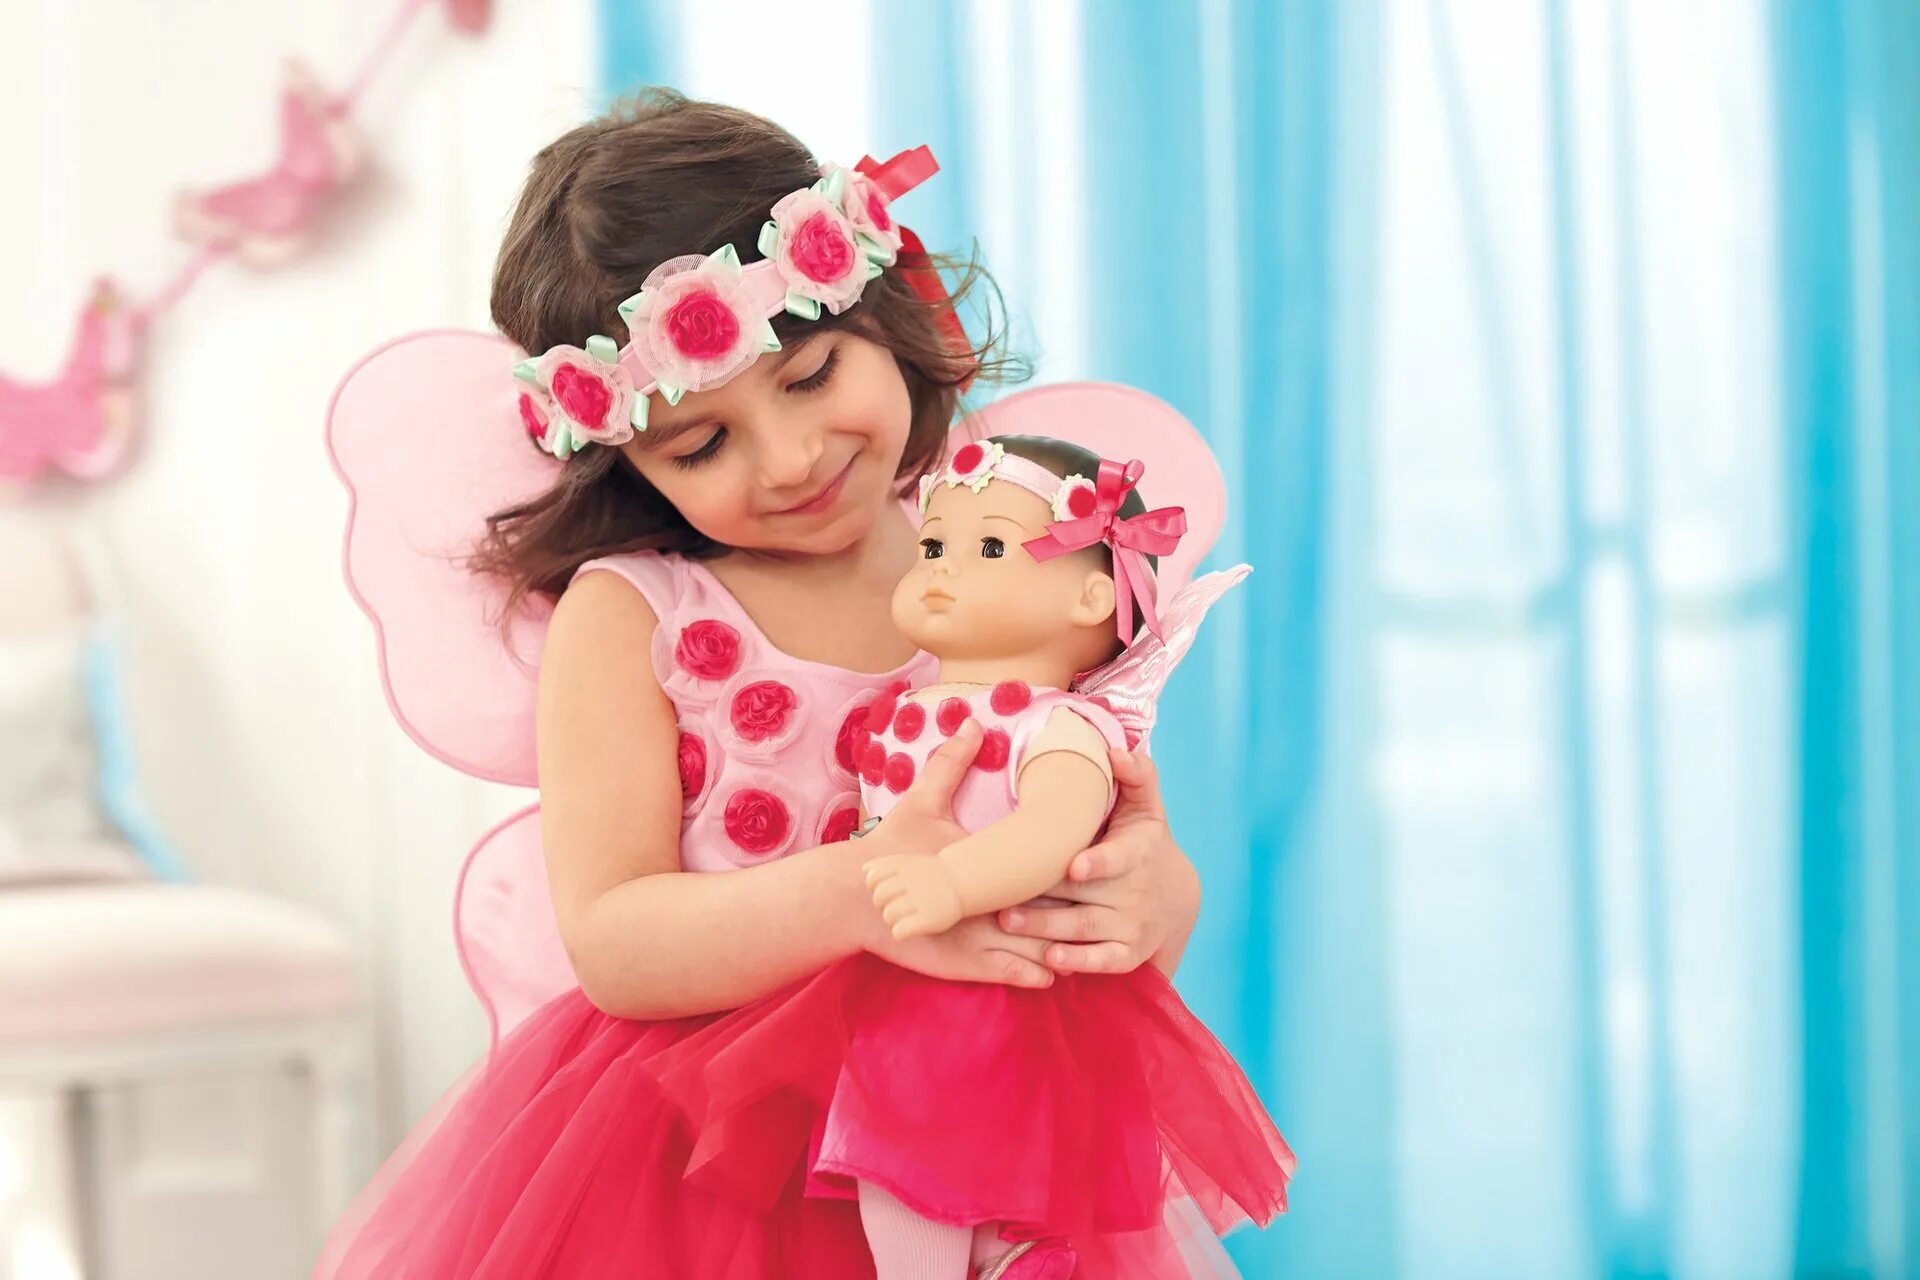 Куклы для девочек. Красивые куклы для девочек. Ребенок с куклой в руках. Девочка с куклой в руках. Картинка девочка с куклой